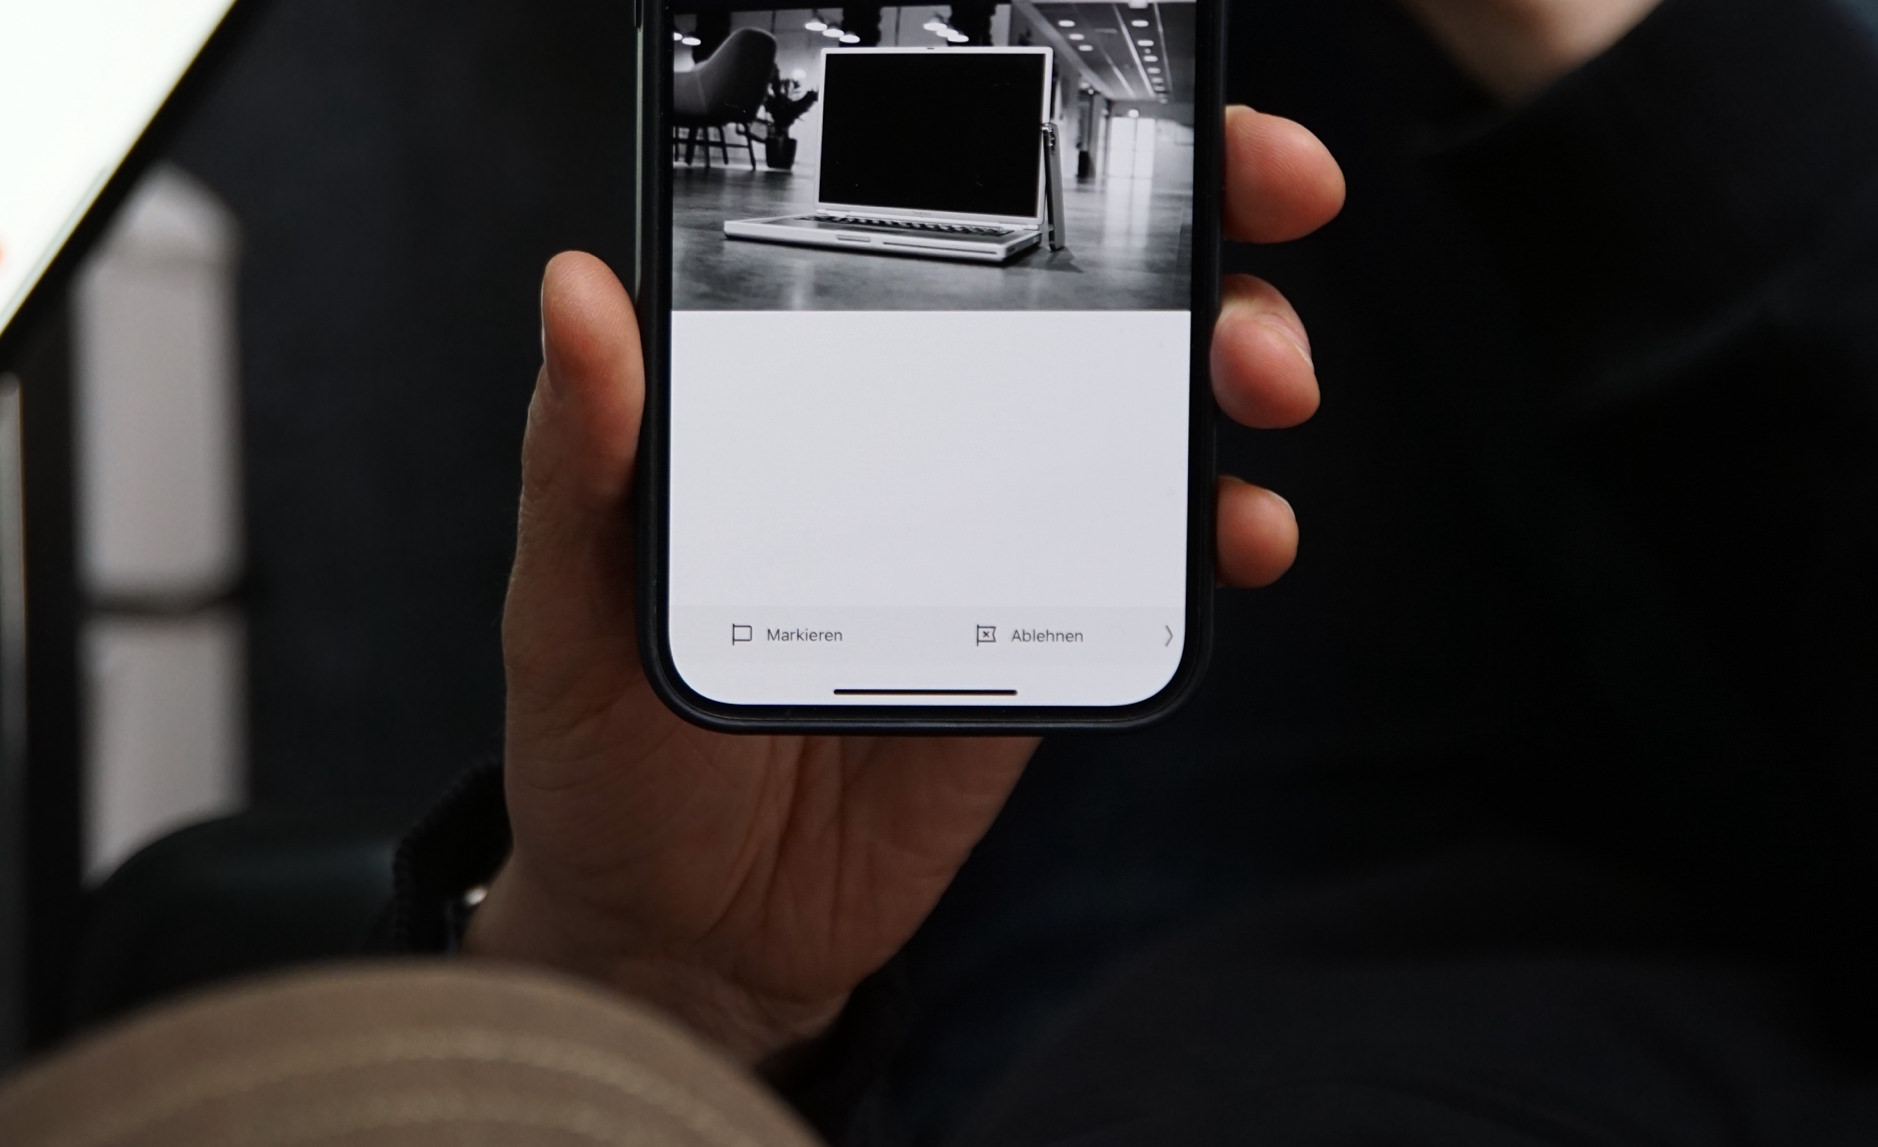 Ein Hand hält ein iPhone, auf dessen Bildschirm eine schwarz-weiße Fotografie eines Laptops zu sehen ist. Unter dem Bild stehen auf Deutsch die Worte "Markieren" und "Ablehnen".